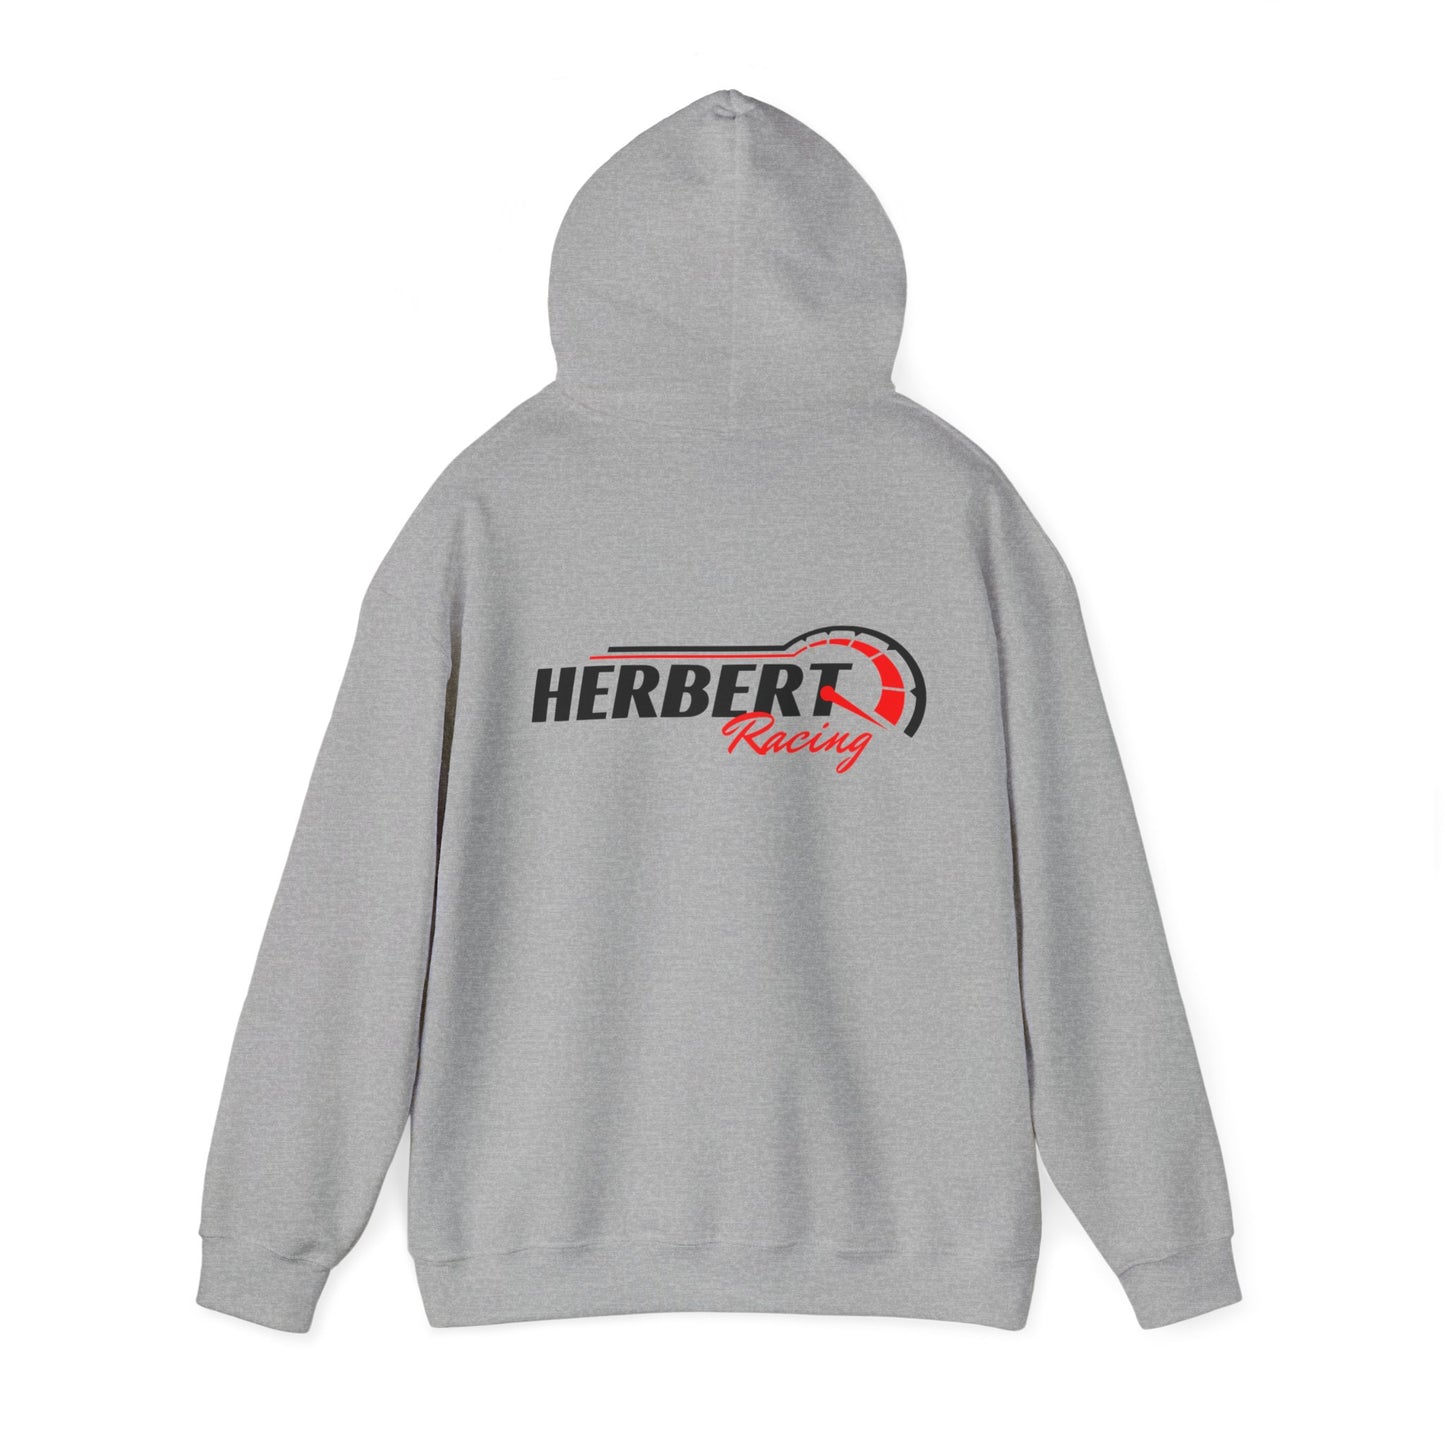 Herbert Racing Hoodie